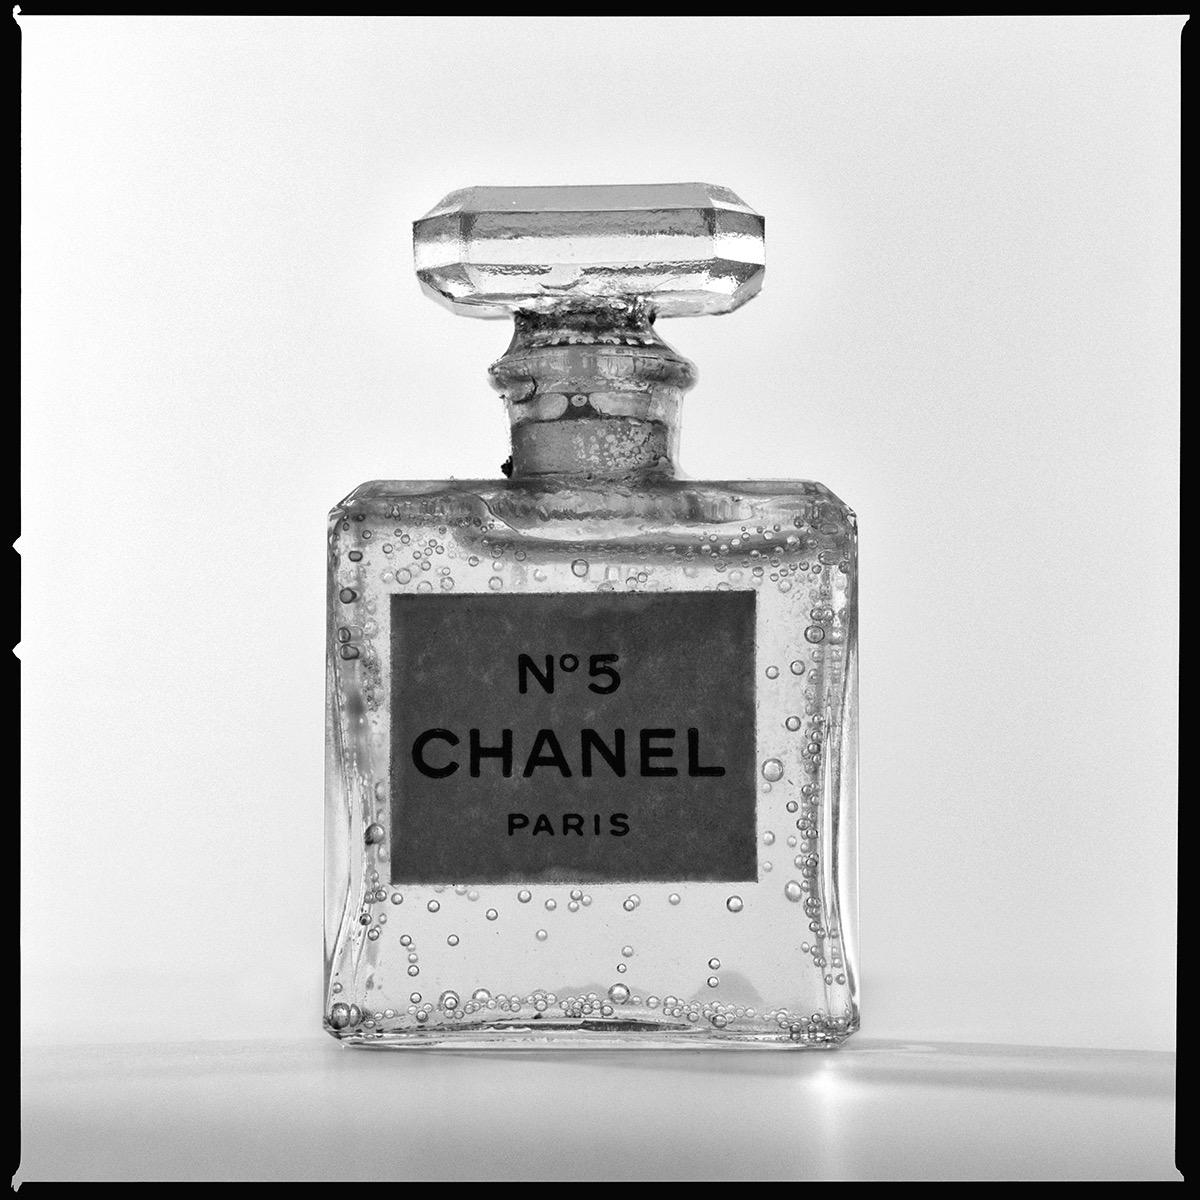 Serie: Chanel Silhouette II
Chromogener Druck auf Kodak Endura Luster Papier
Alle verfügbaren Größen und Ausgaben:
18" x 18"
30" x 30"
45" x 45"
60" x 60"
70" x 70"
Ausgaben von 3 + 2 Artist Proofs

Tyler Shields ist Fotograf, Filmregisseur und